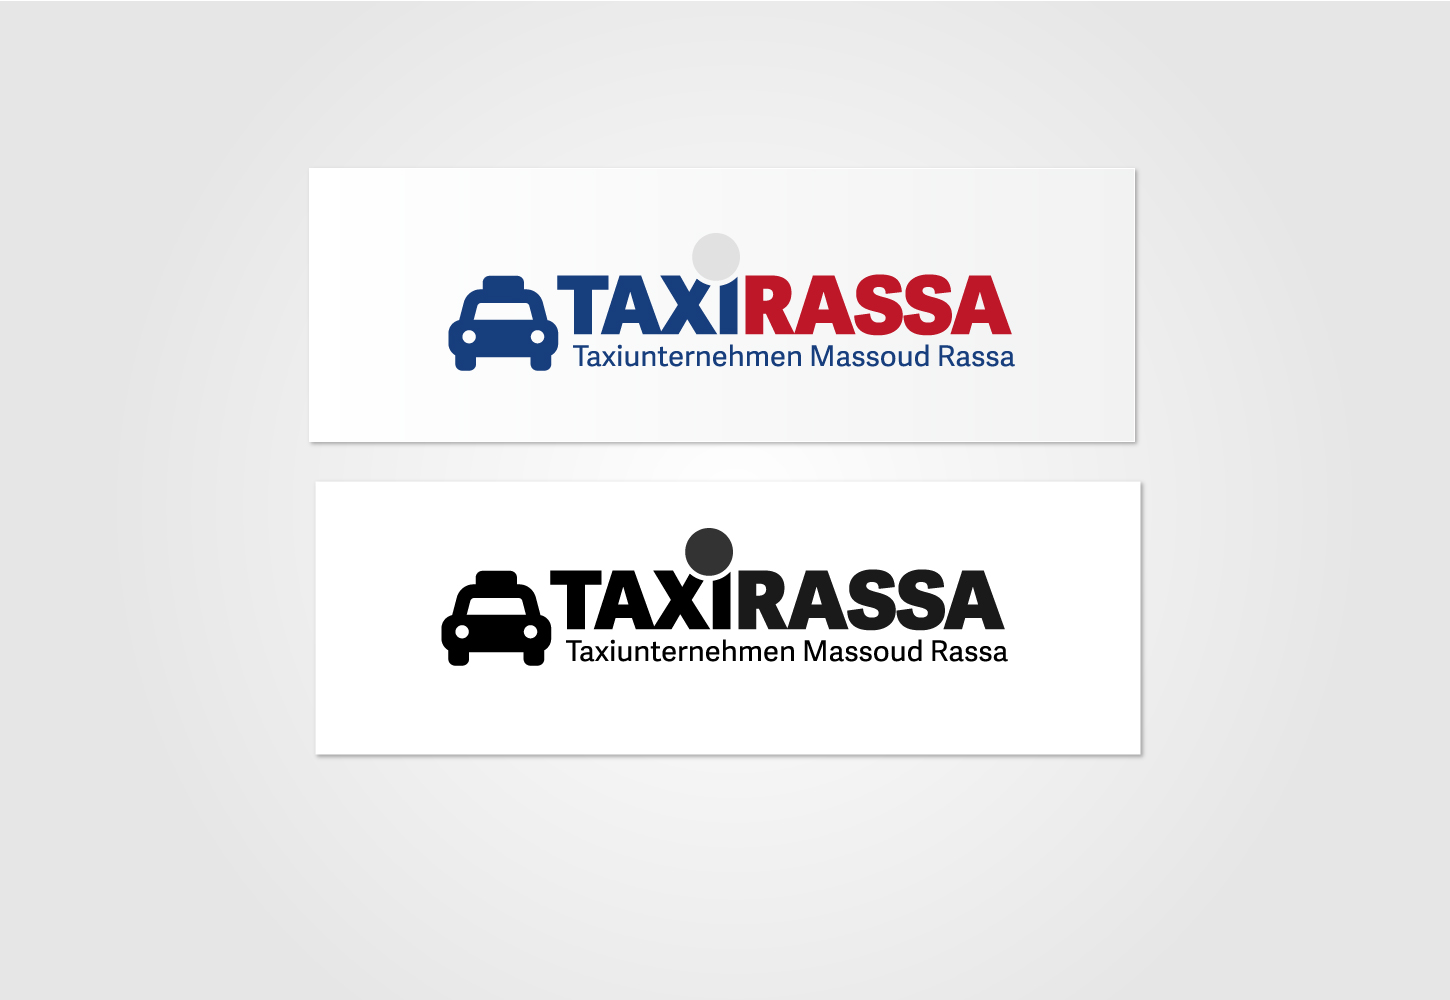 Taxi Rassa